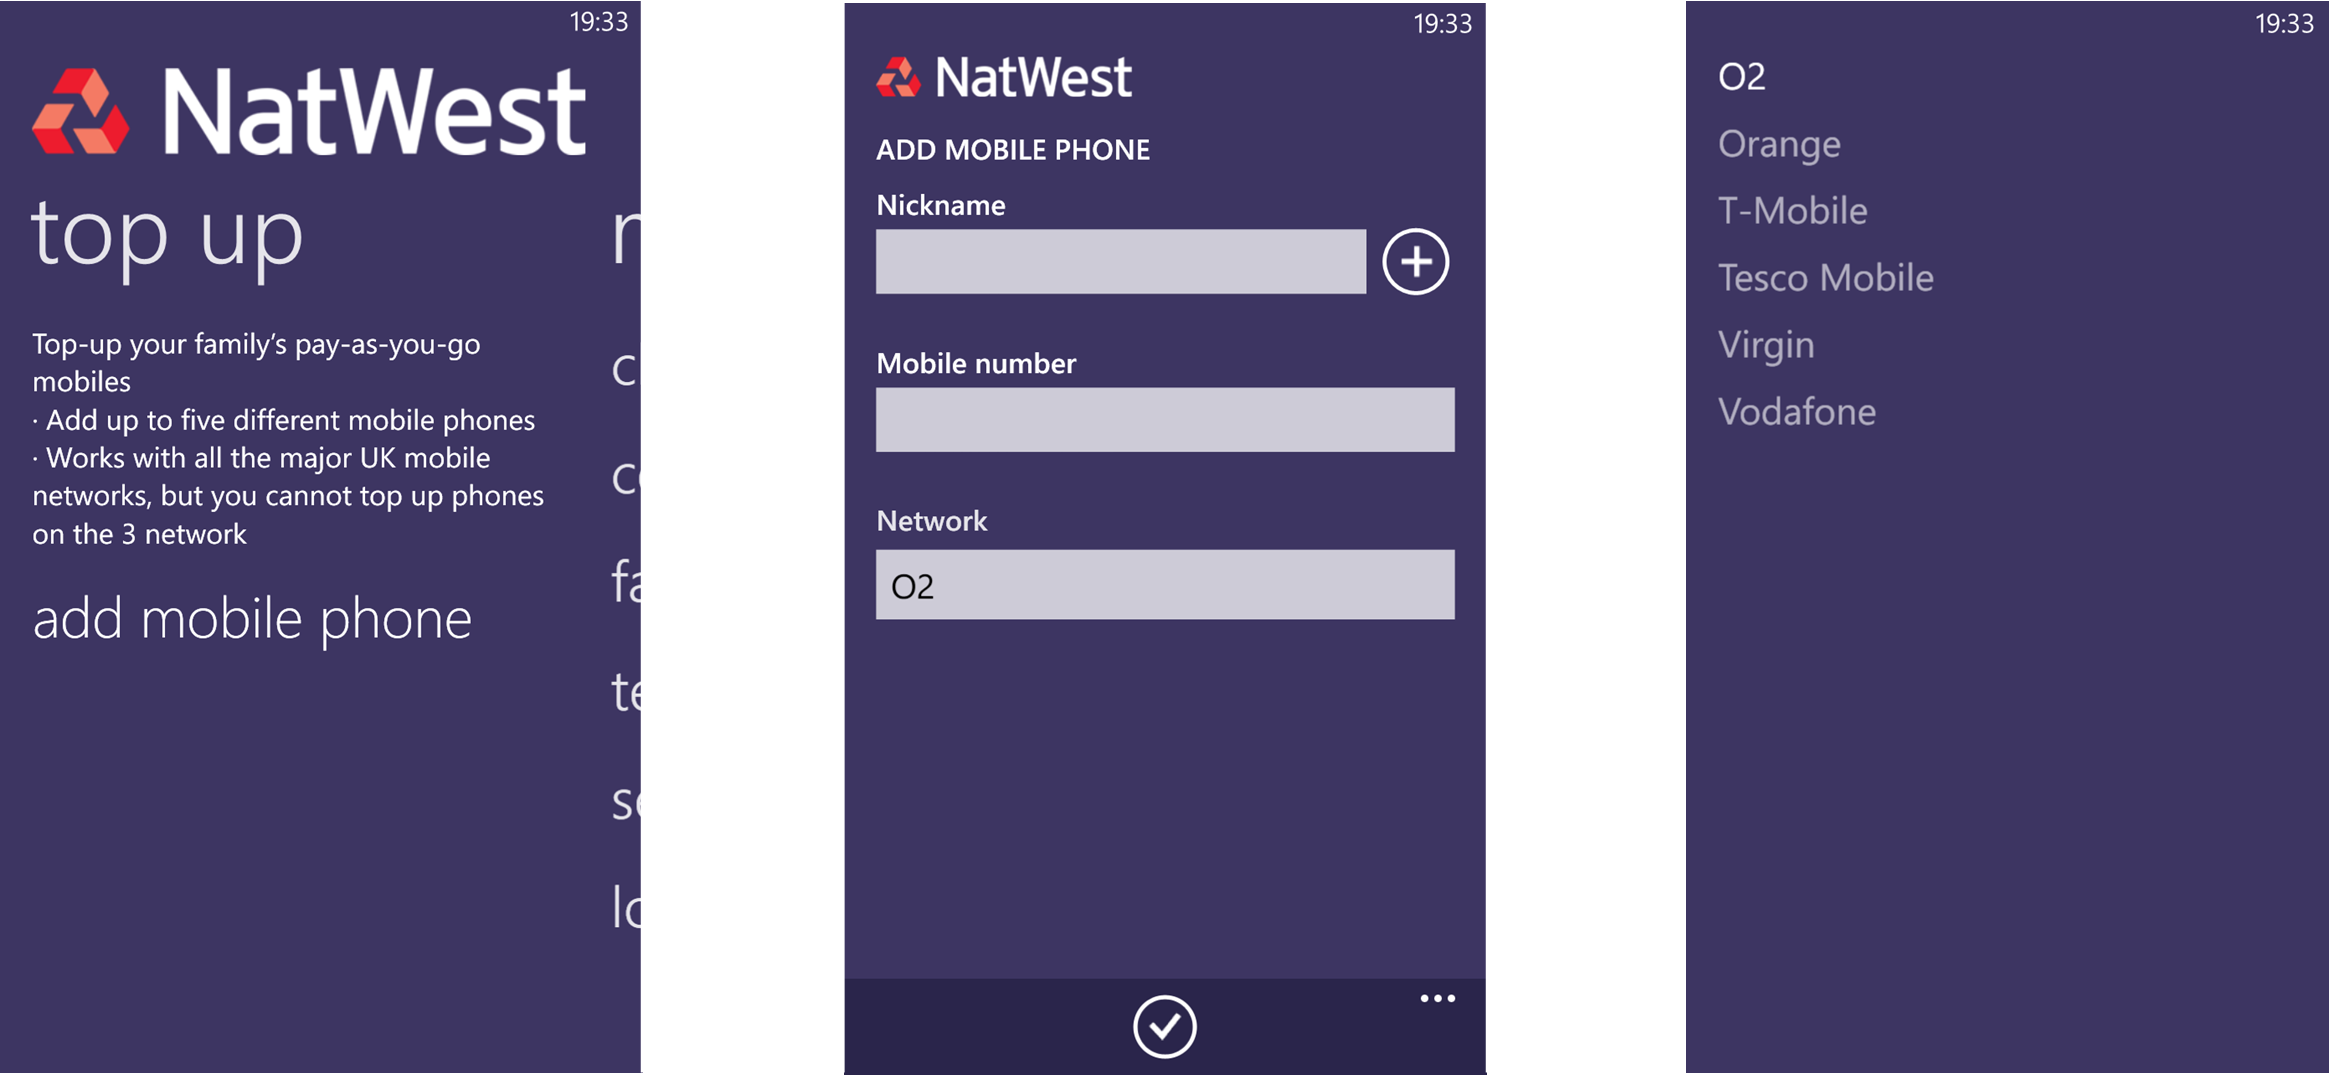 NatWest App (6) TopUp